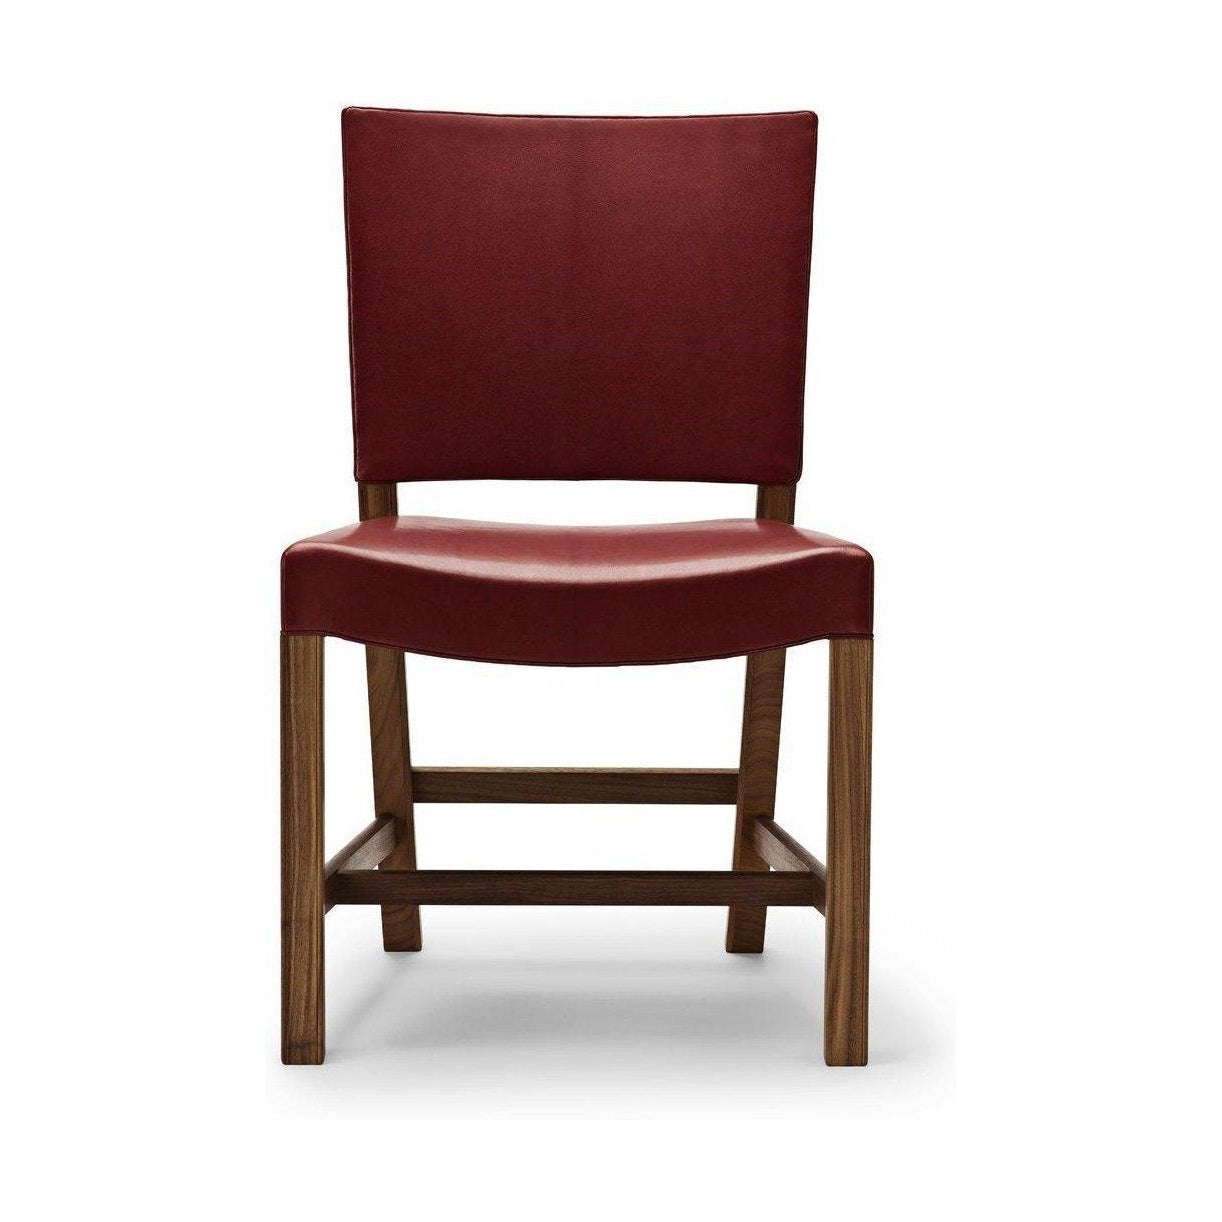 Carl Hansen KK47510 Punainen tuoli, lakattu pähkinä/punainen vuohenahka